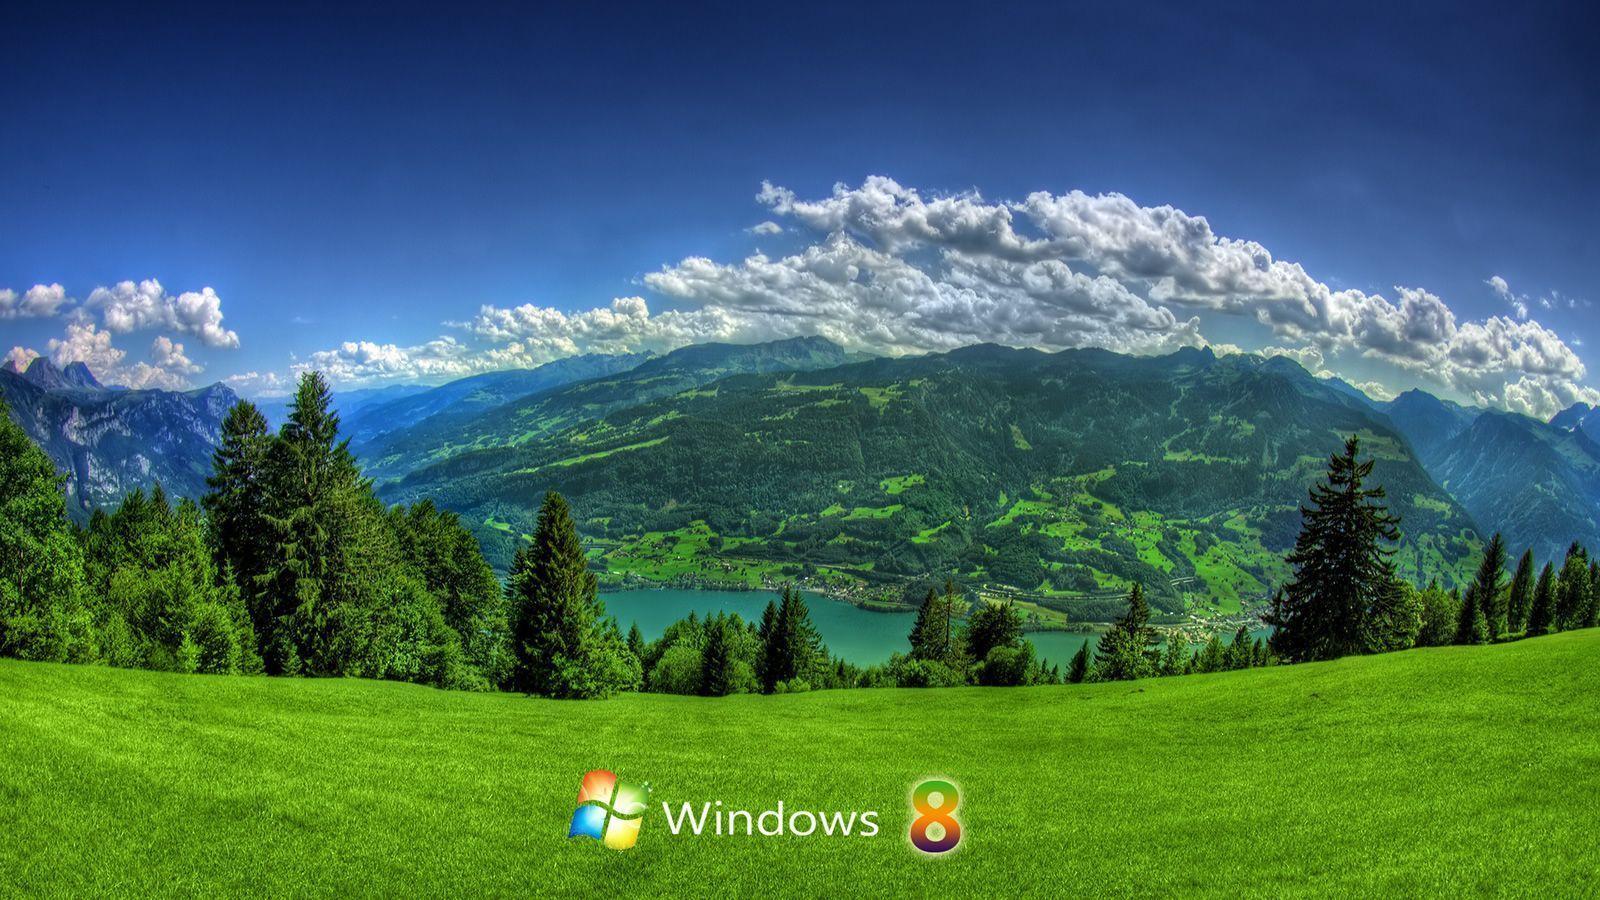 Best Nature Wallpaper For Windows 8 HD Cool 7 HD Wallpaper. Eakai